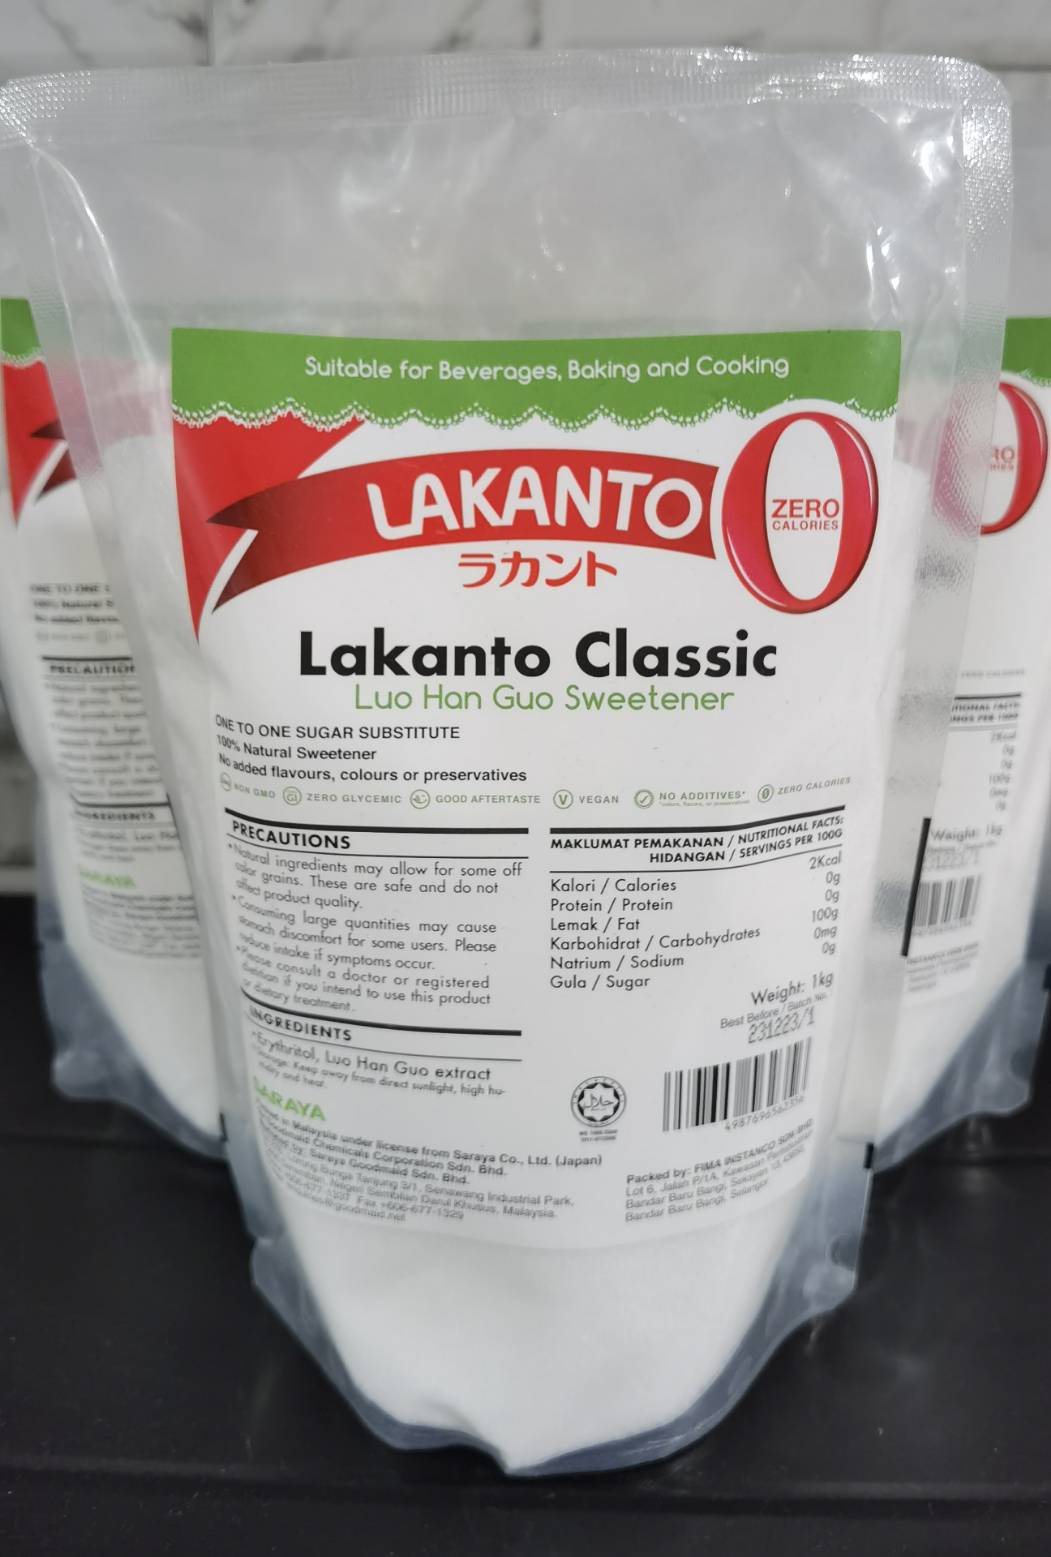 น้ำตาล lakanto  classic  น้ำตาลหล่อฮั่งก้วย  keto-friendly ขนาด 1kg(น้ำตาลทรายขาว) น้ำตาลทดแทนที่เหมือนจริงมากที่สุด